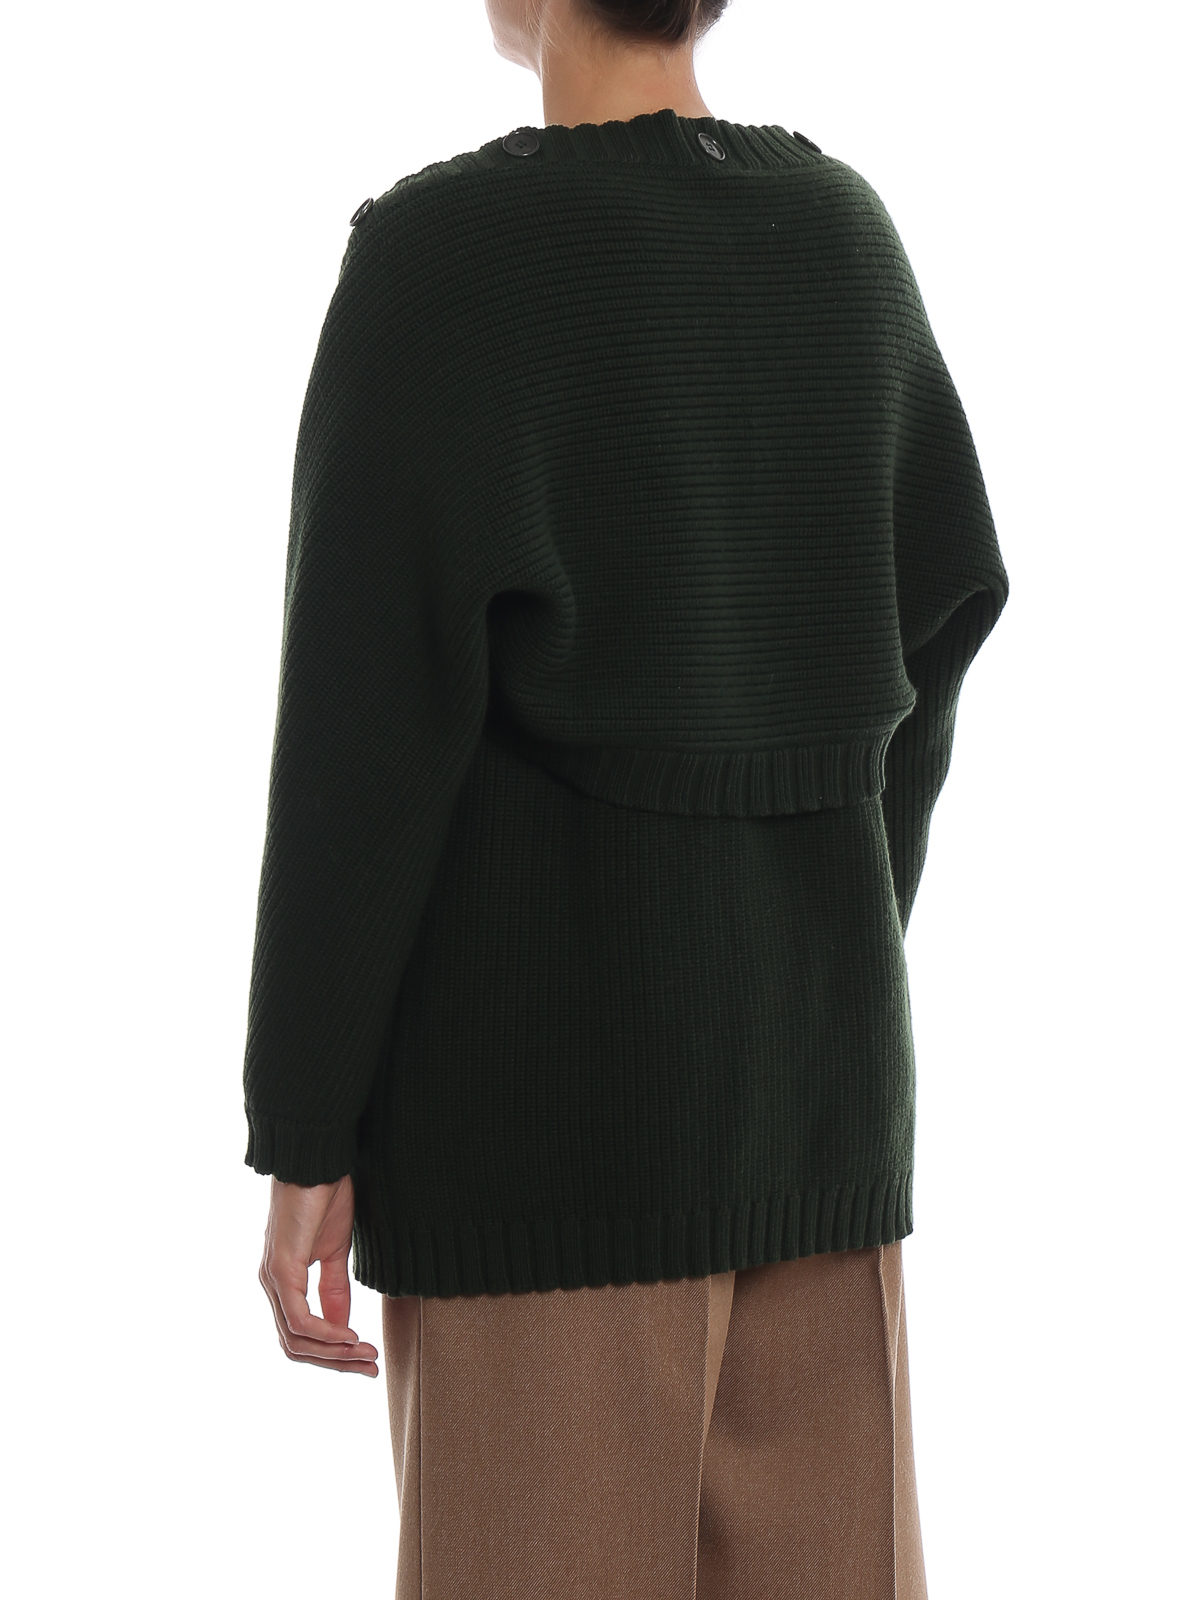 Cardigans Alberta Ferretti - Detachable sleeves wool cardigan A093266000440